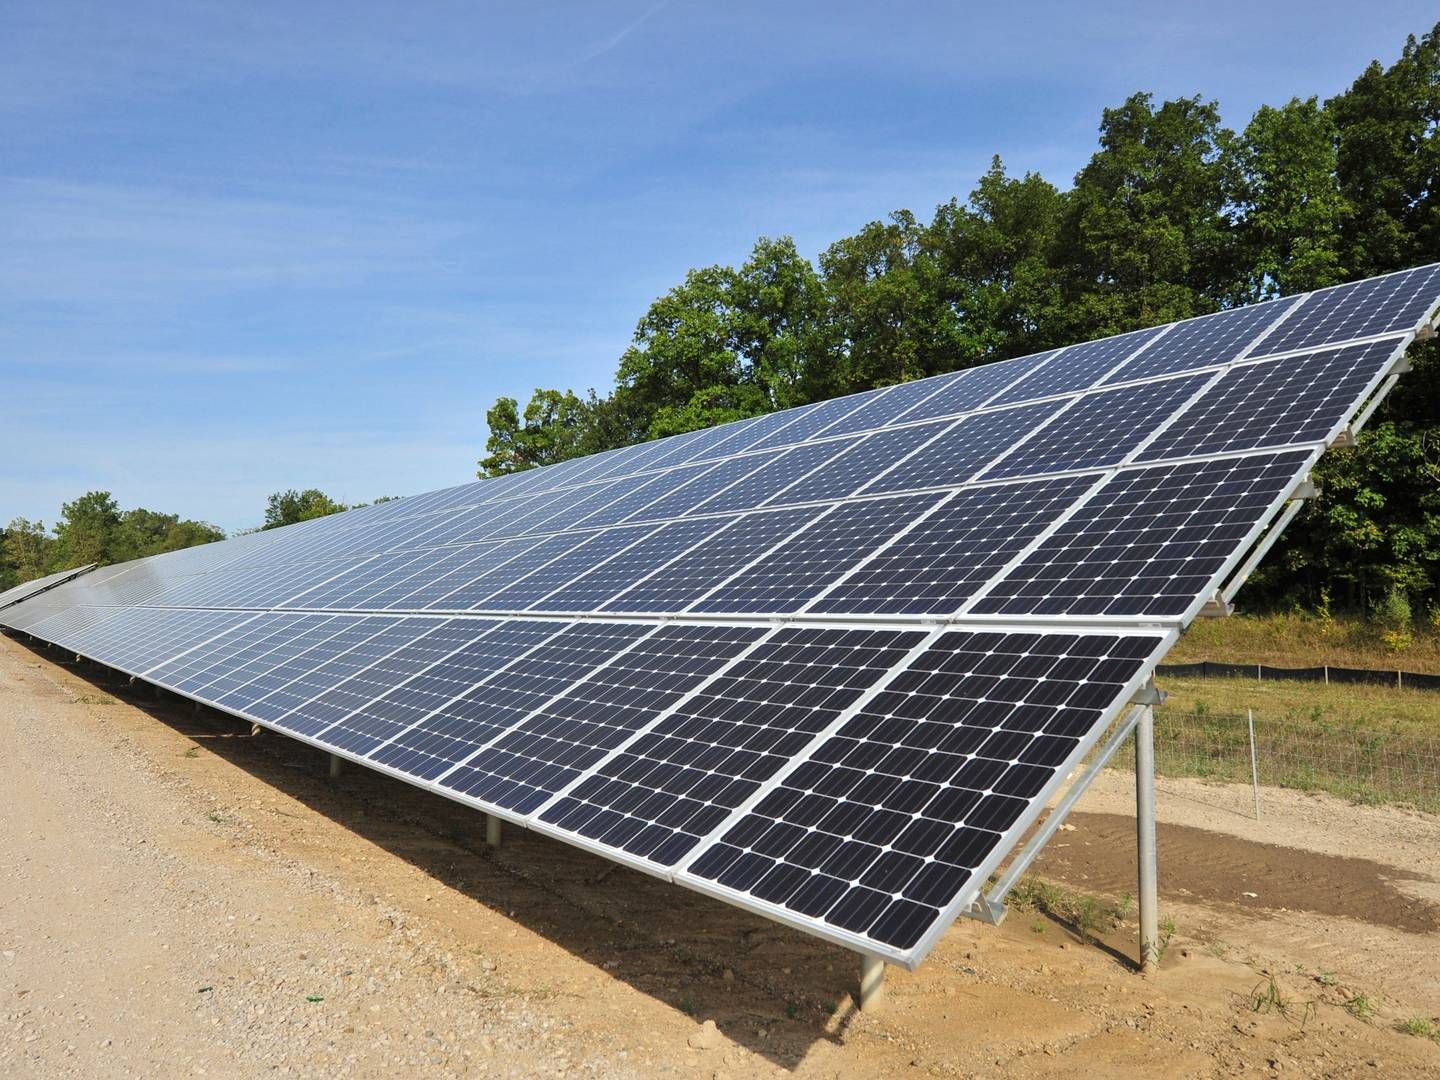 Omstillingen til grønne energiformer, såsom solceller, kræver forsikringsdækninger, som indtil for relativt nylig har været ukendte for forsikringssektoren, påpeger forsikringsmægler. | Foto: Ryan Stanton/AP/Ritzau Scanpix